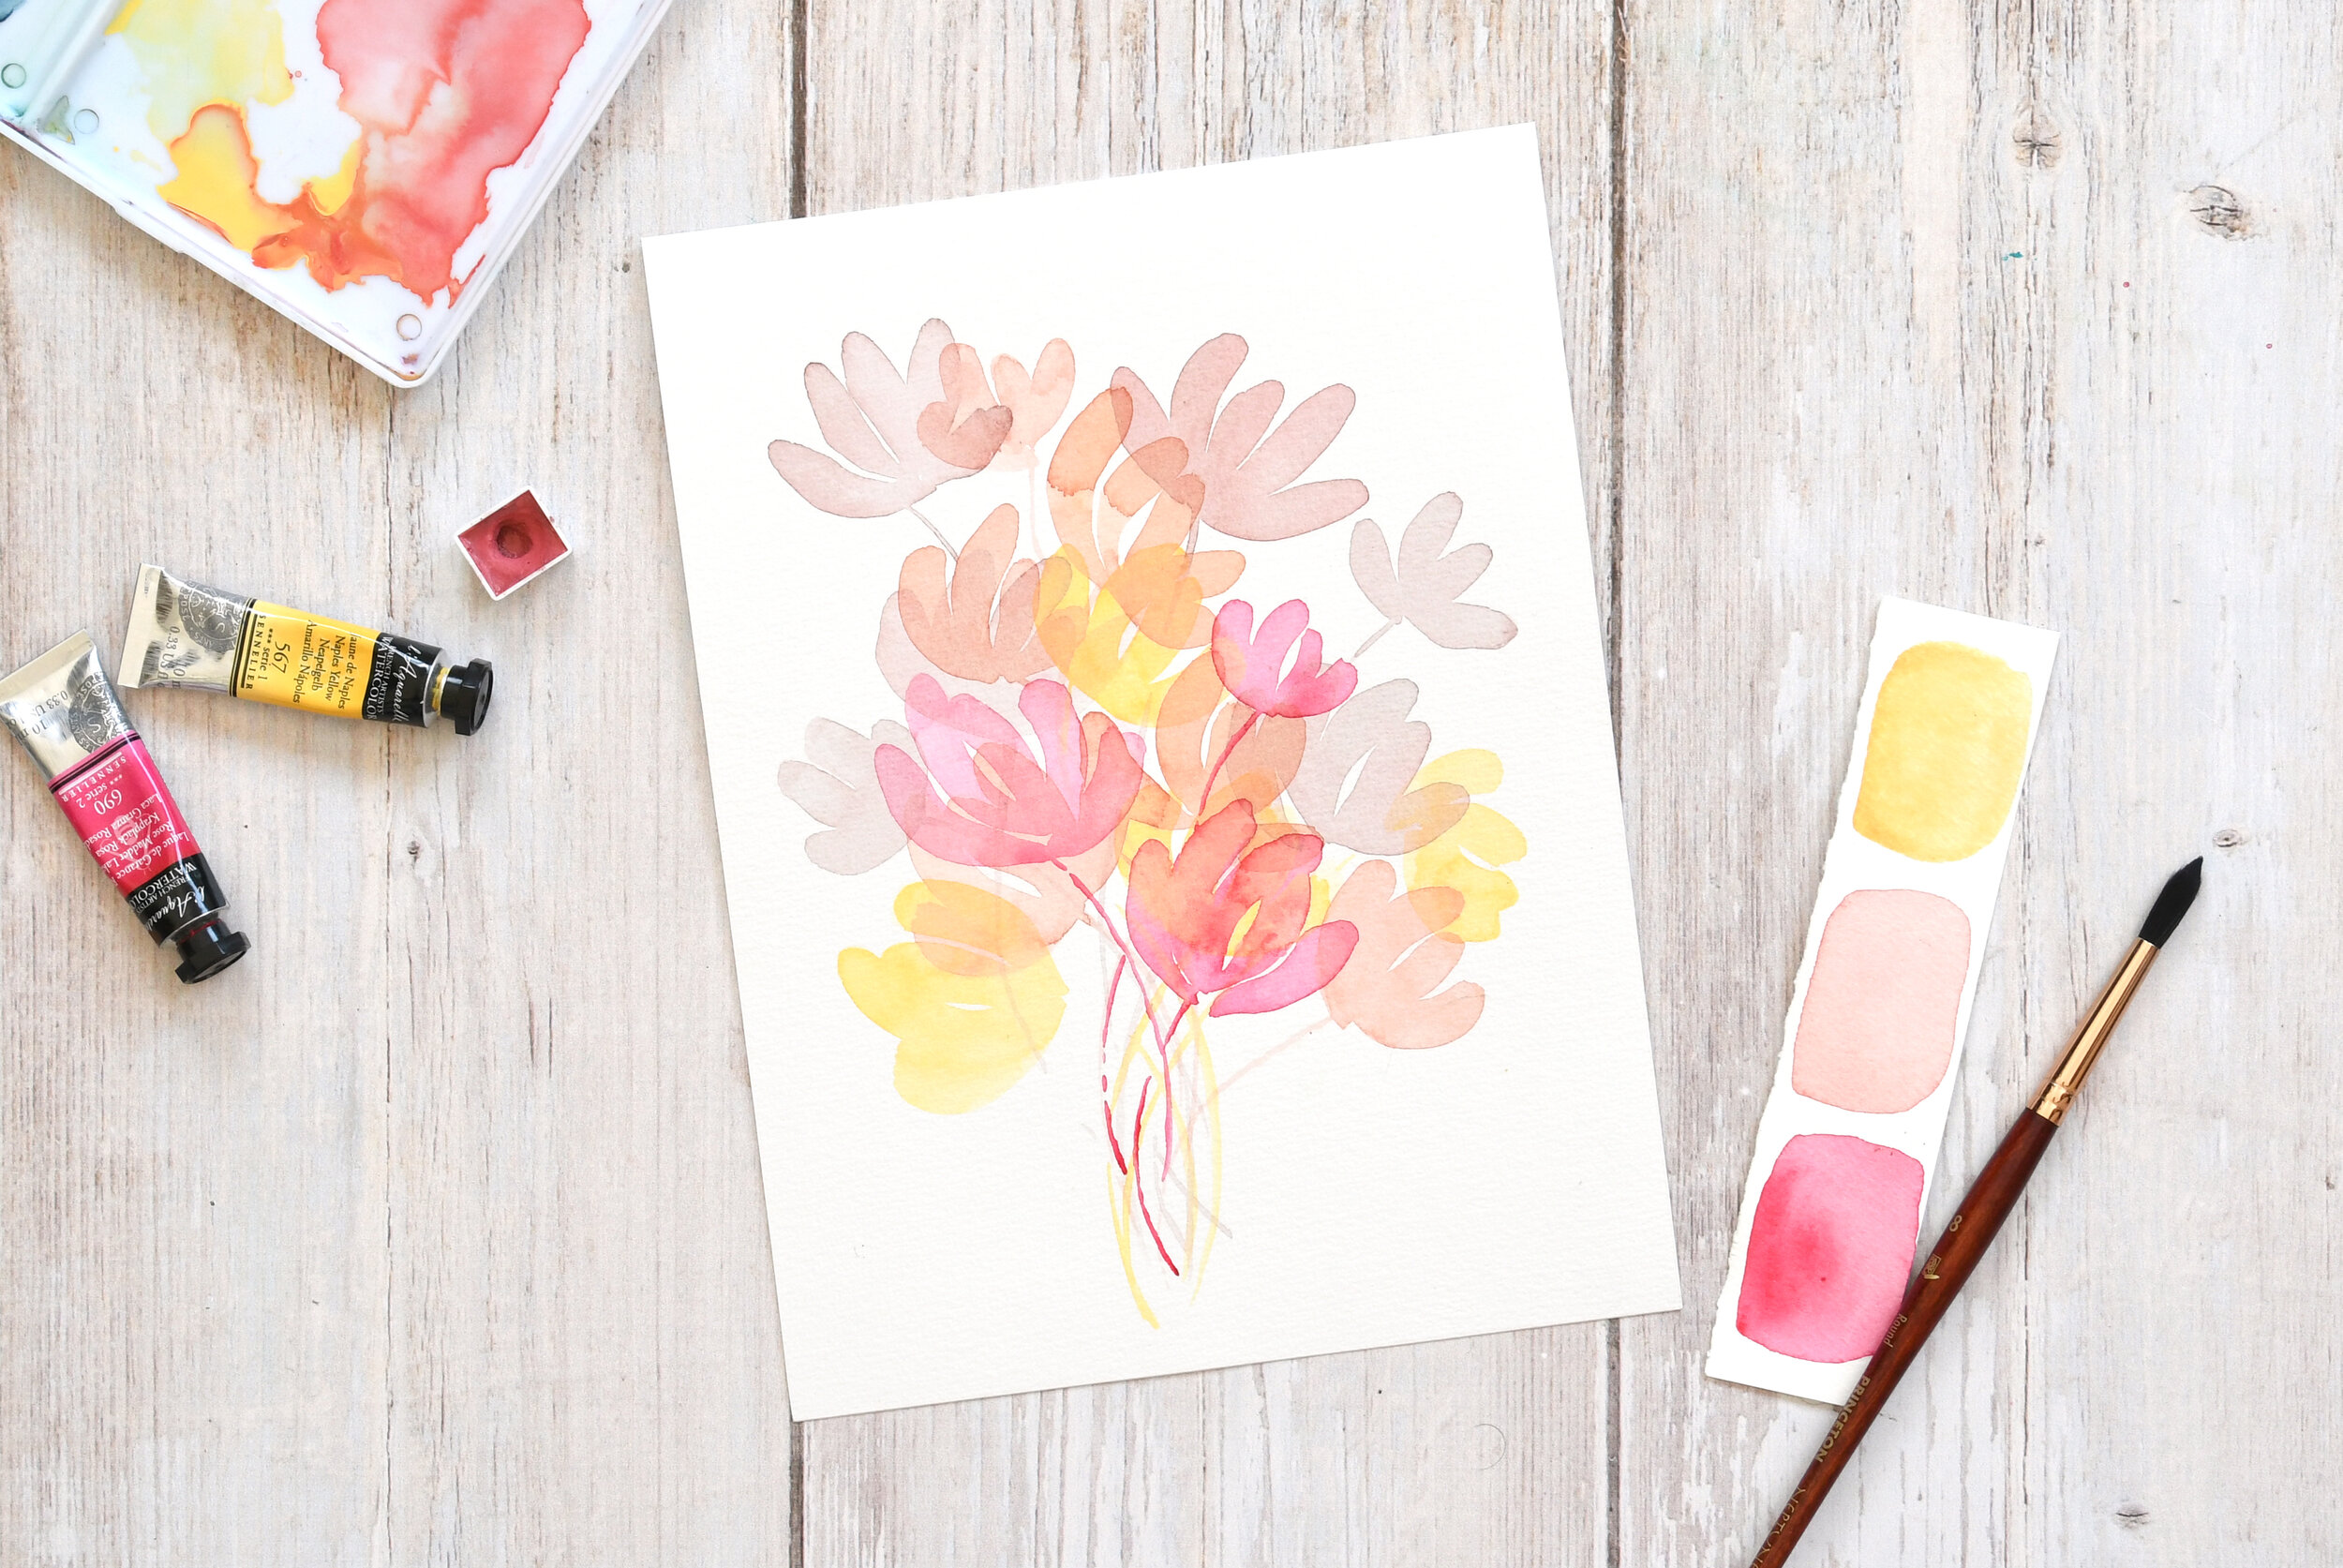 Peindre un bouquet de fleurs roses à l'aquarelle — Mirglis - Sarah Van Der  Linden